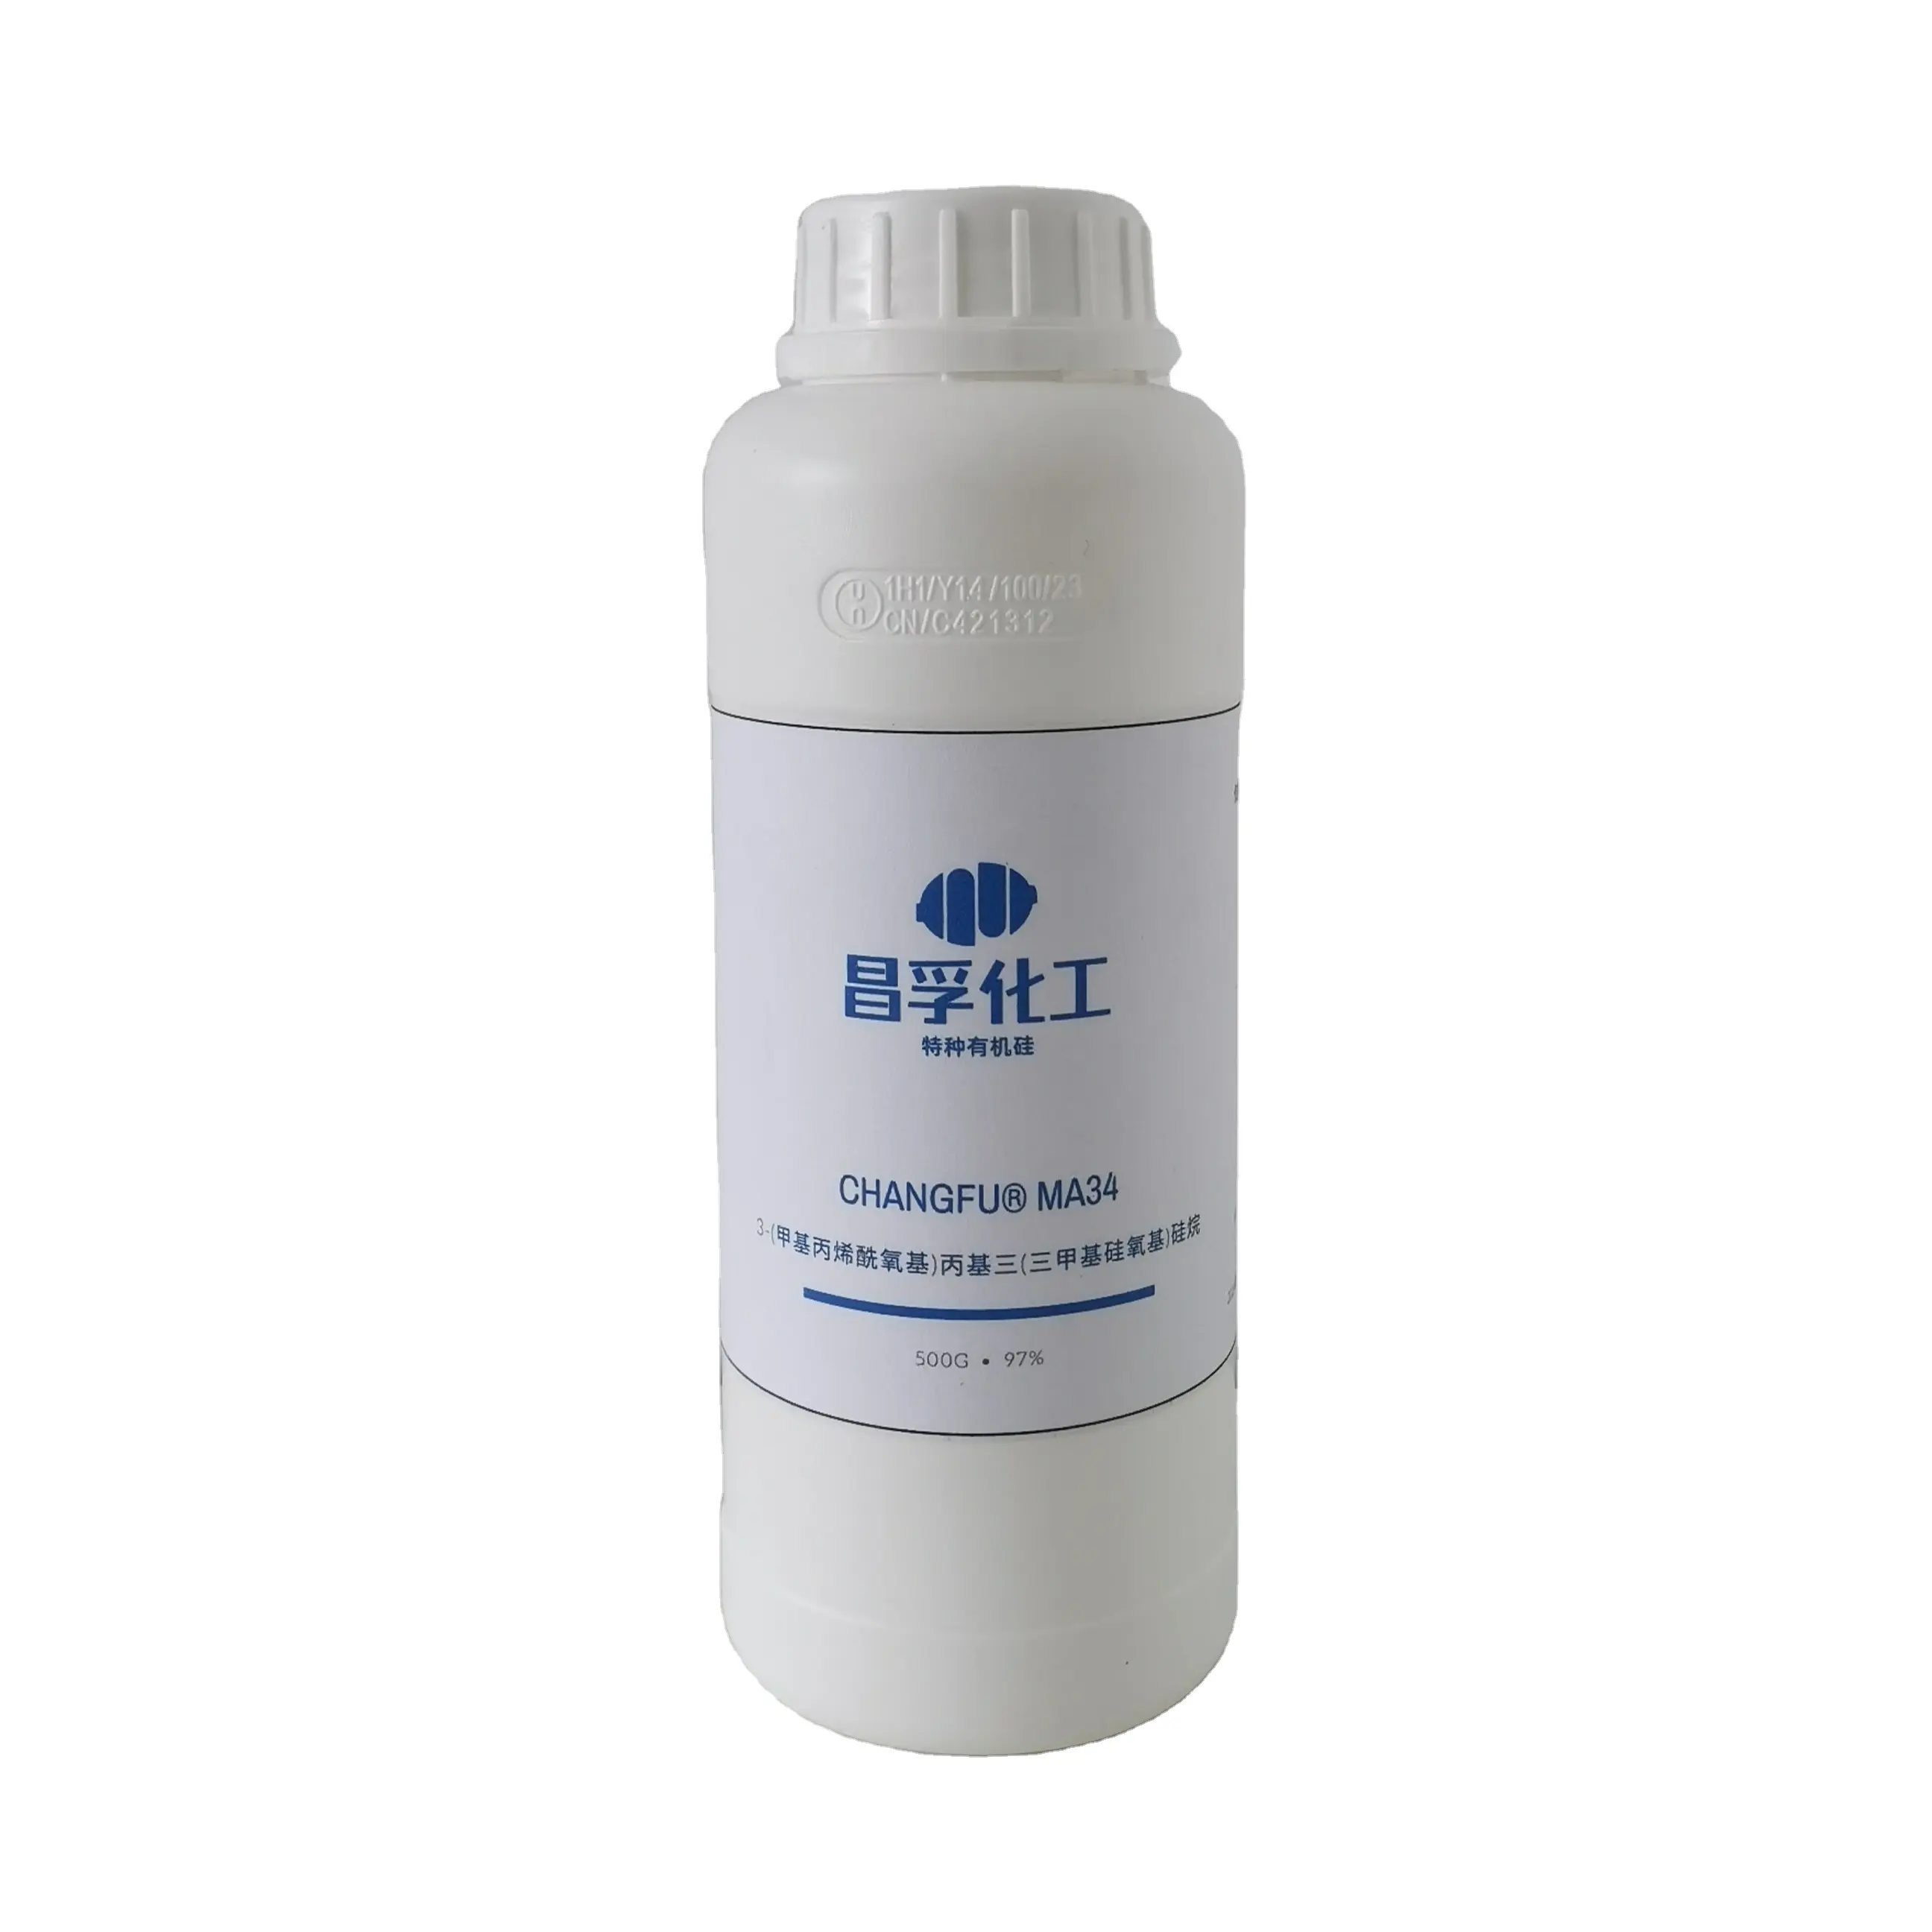 3-[Tris (trimetilsilyloxy) silil] propil metakrilat kimyasal yardımcı ajan kontakt lensler Comonomer CAS no. 17096-07-0 sıvı